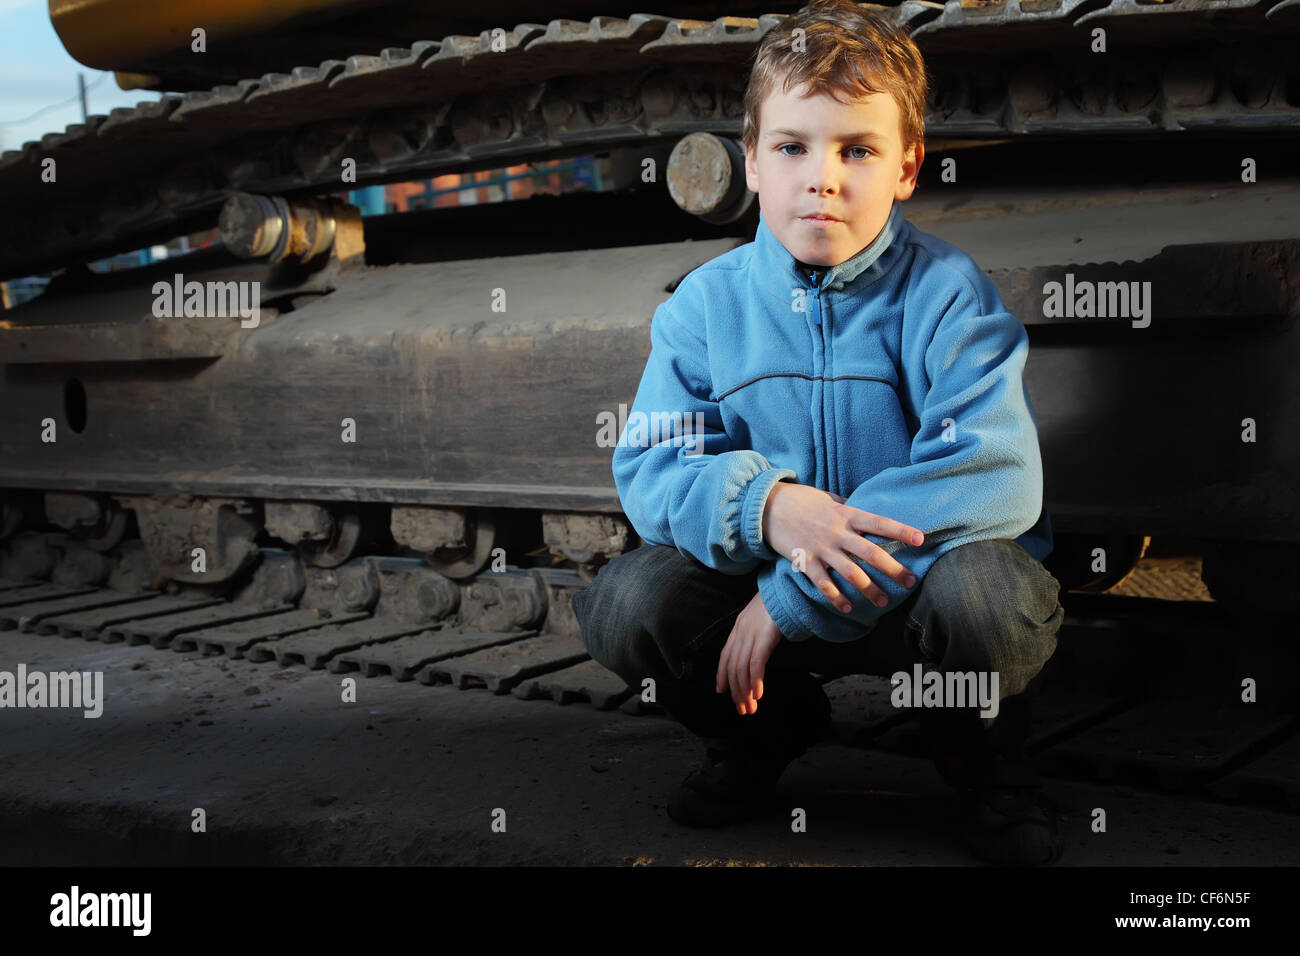 Petit garçon en veste bleue assis près de tracteur à chenilles dans le noir Banque D'Images